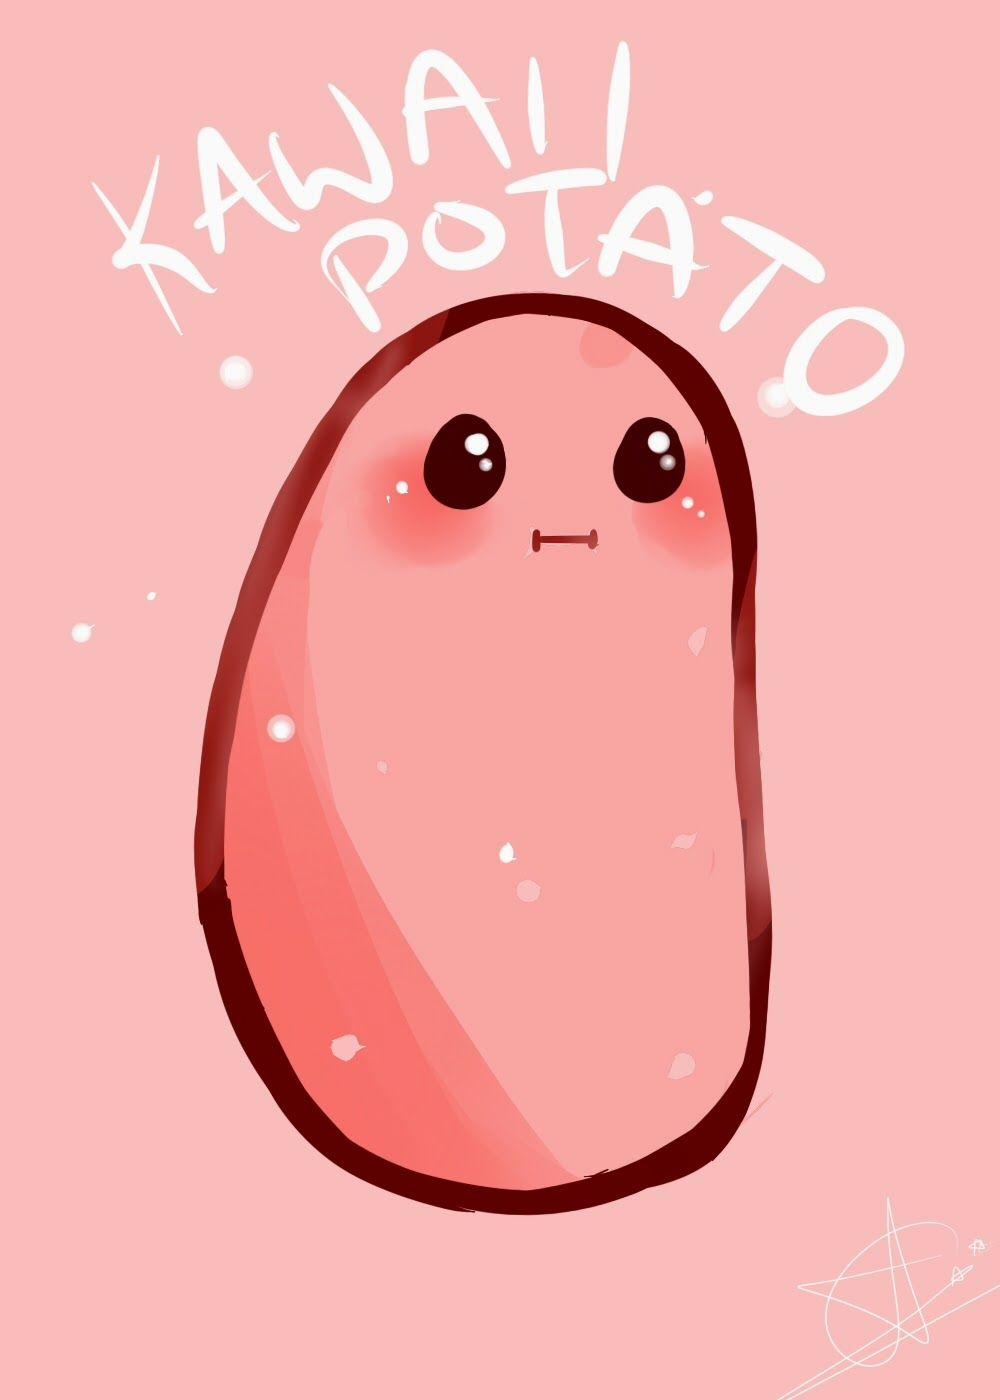 Kawaii Potato Wallpaper Free Kawaii Potato